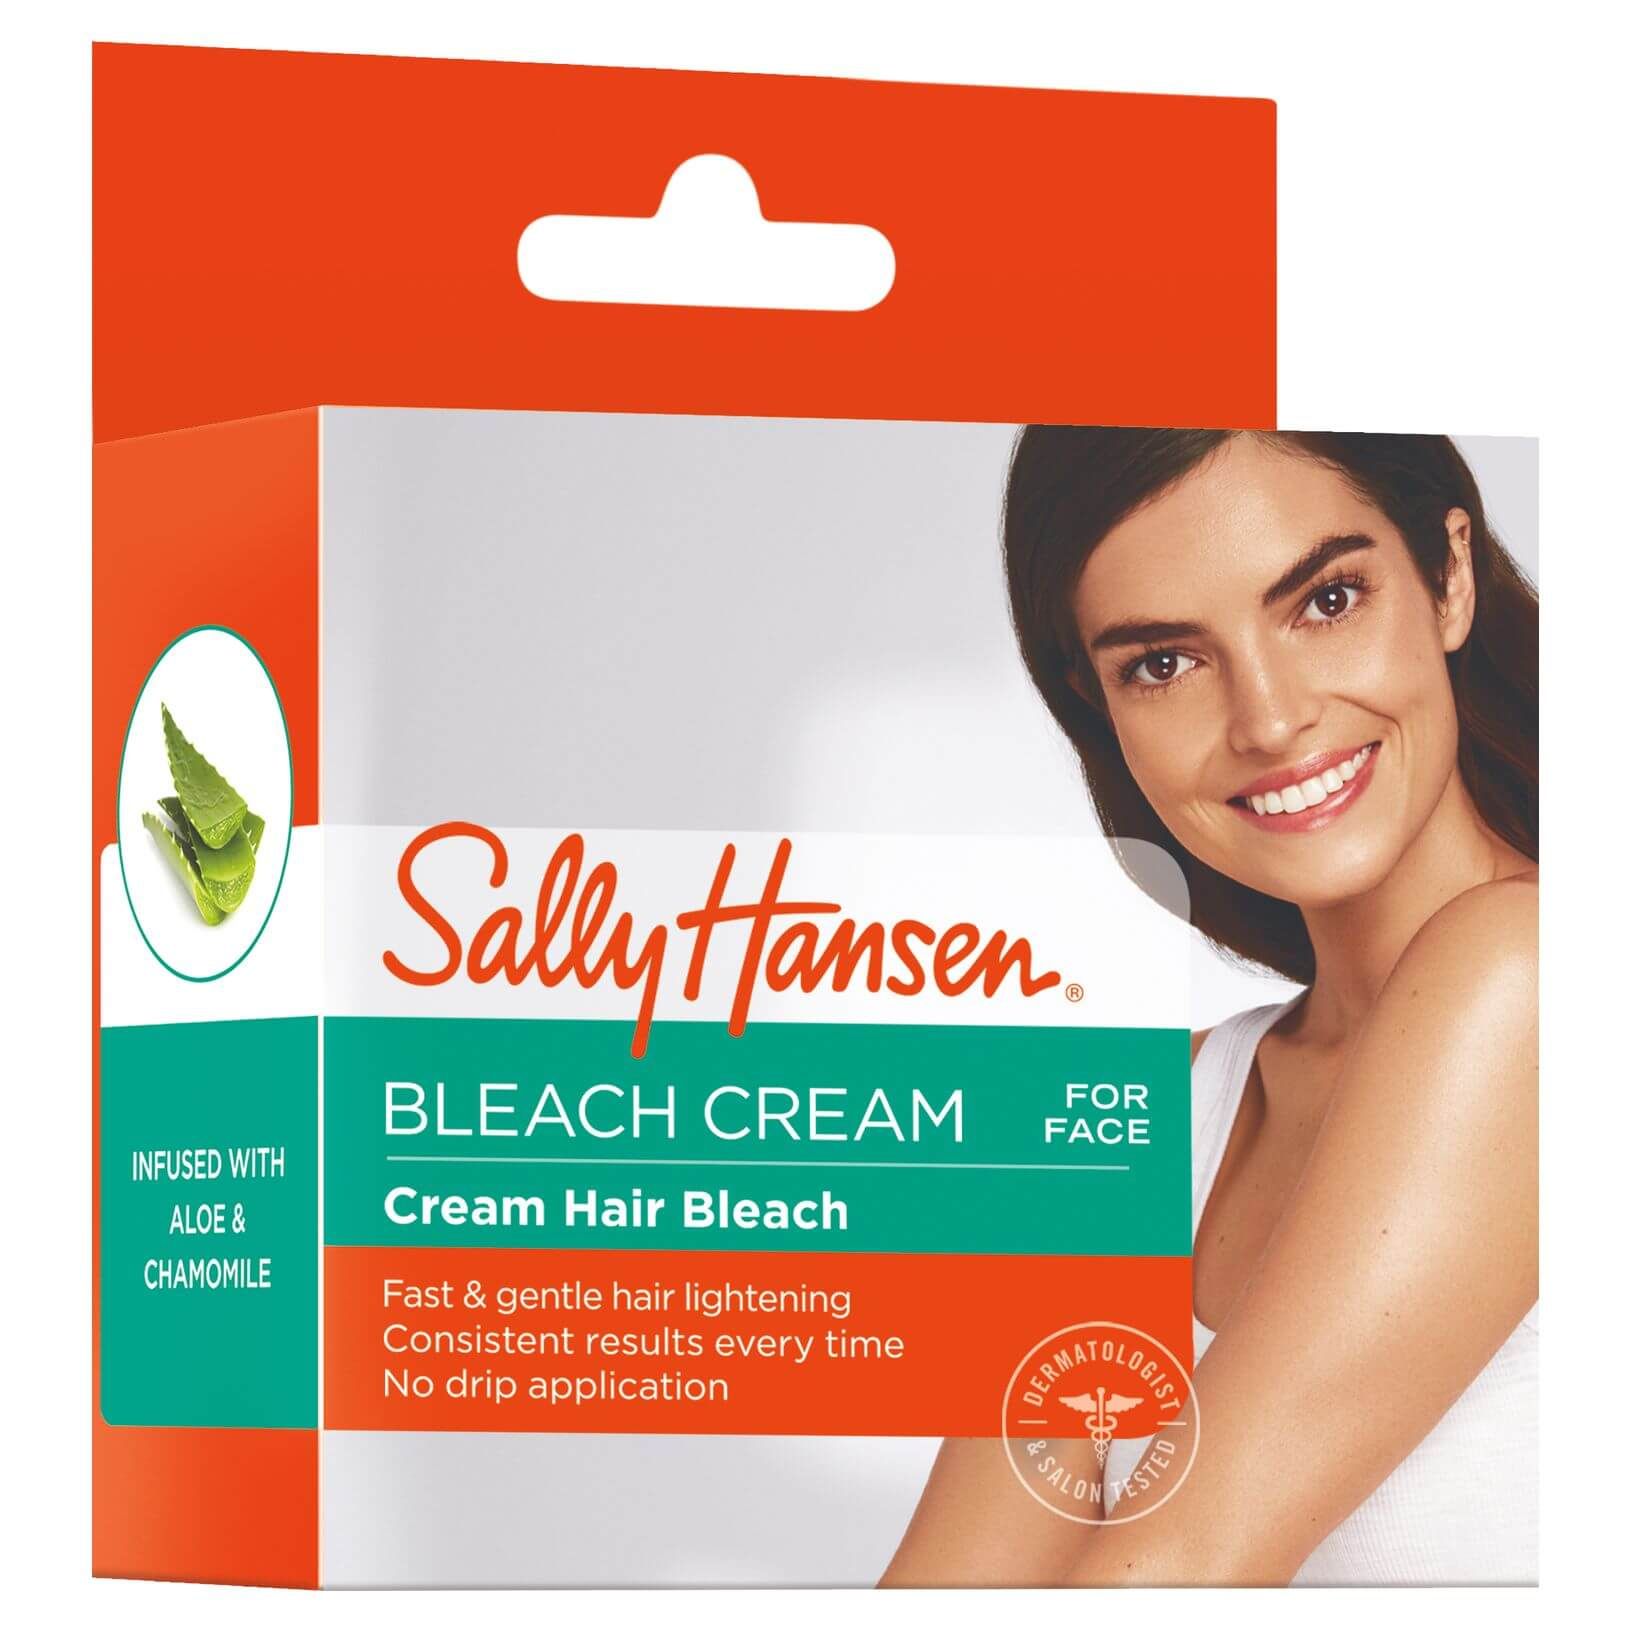 I BLEACHED MY ARM HAIR  Sally Hansen bleach cream review  YouTube